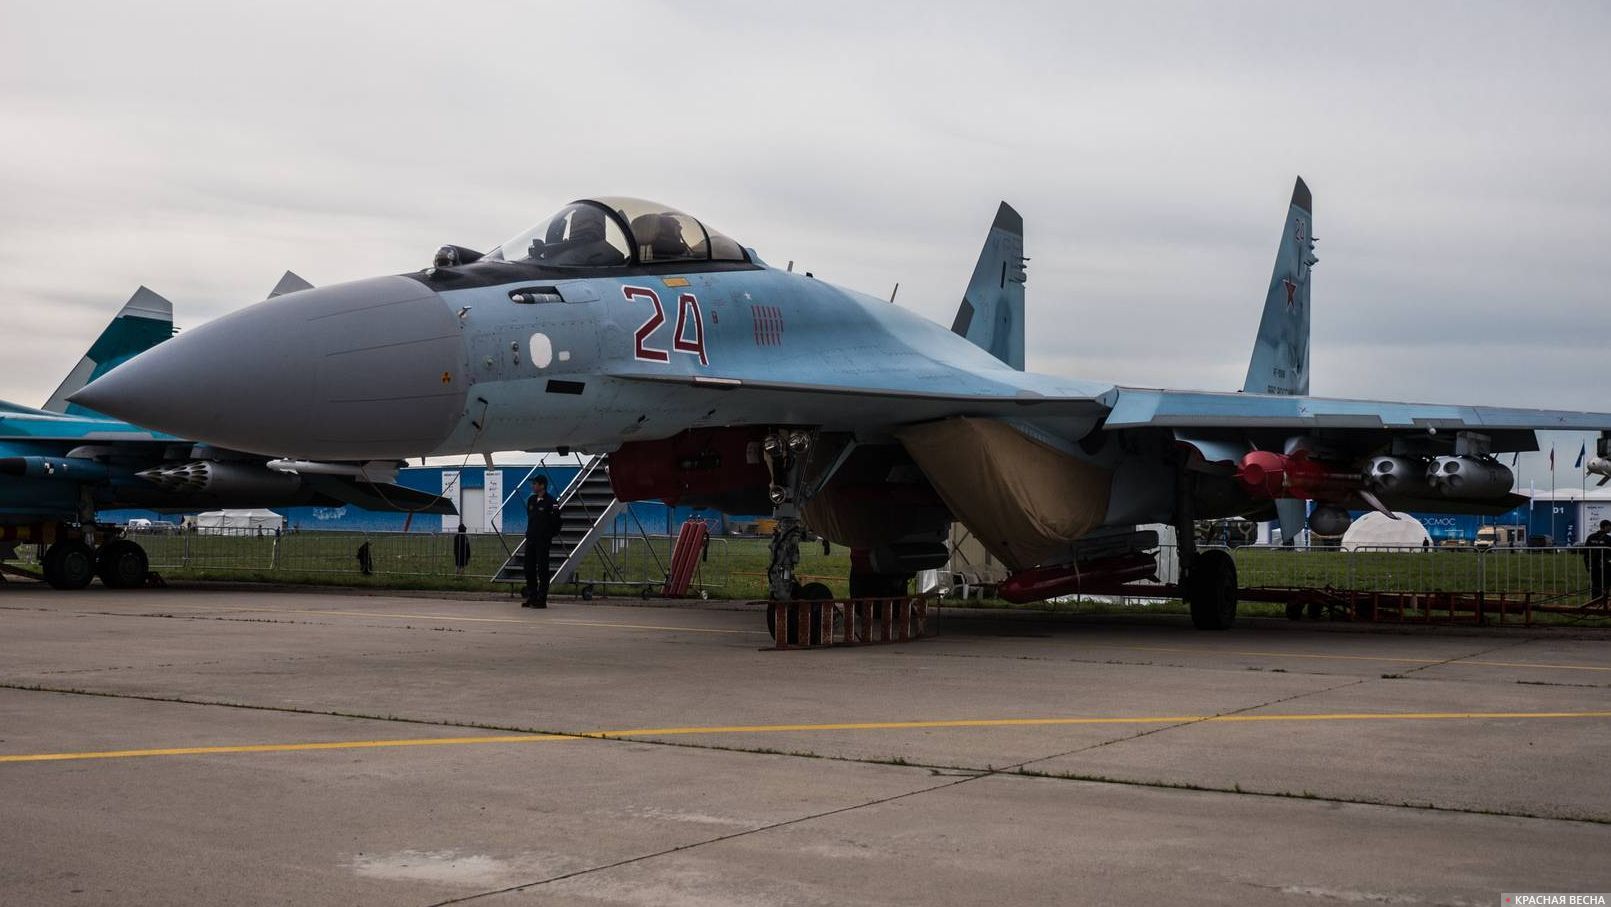 Сверхманевренный истребитель Су-35. МАКС Раменское. 22.07.2017